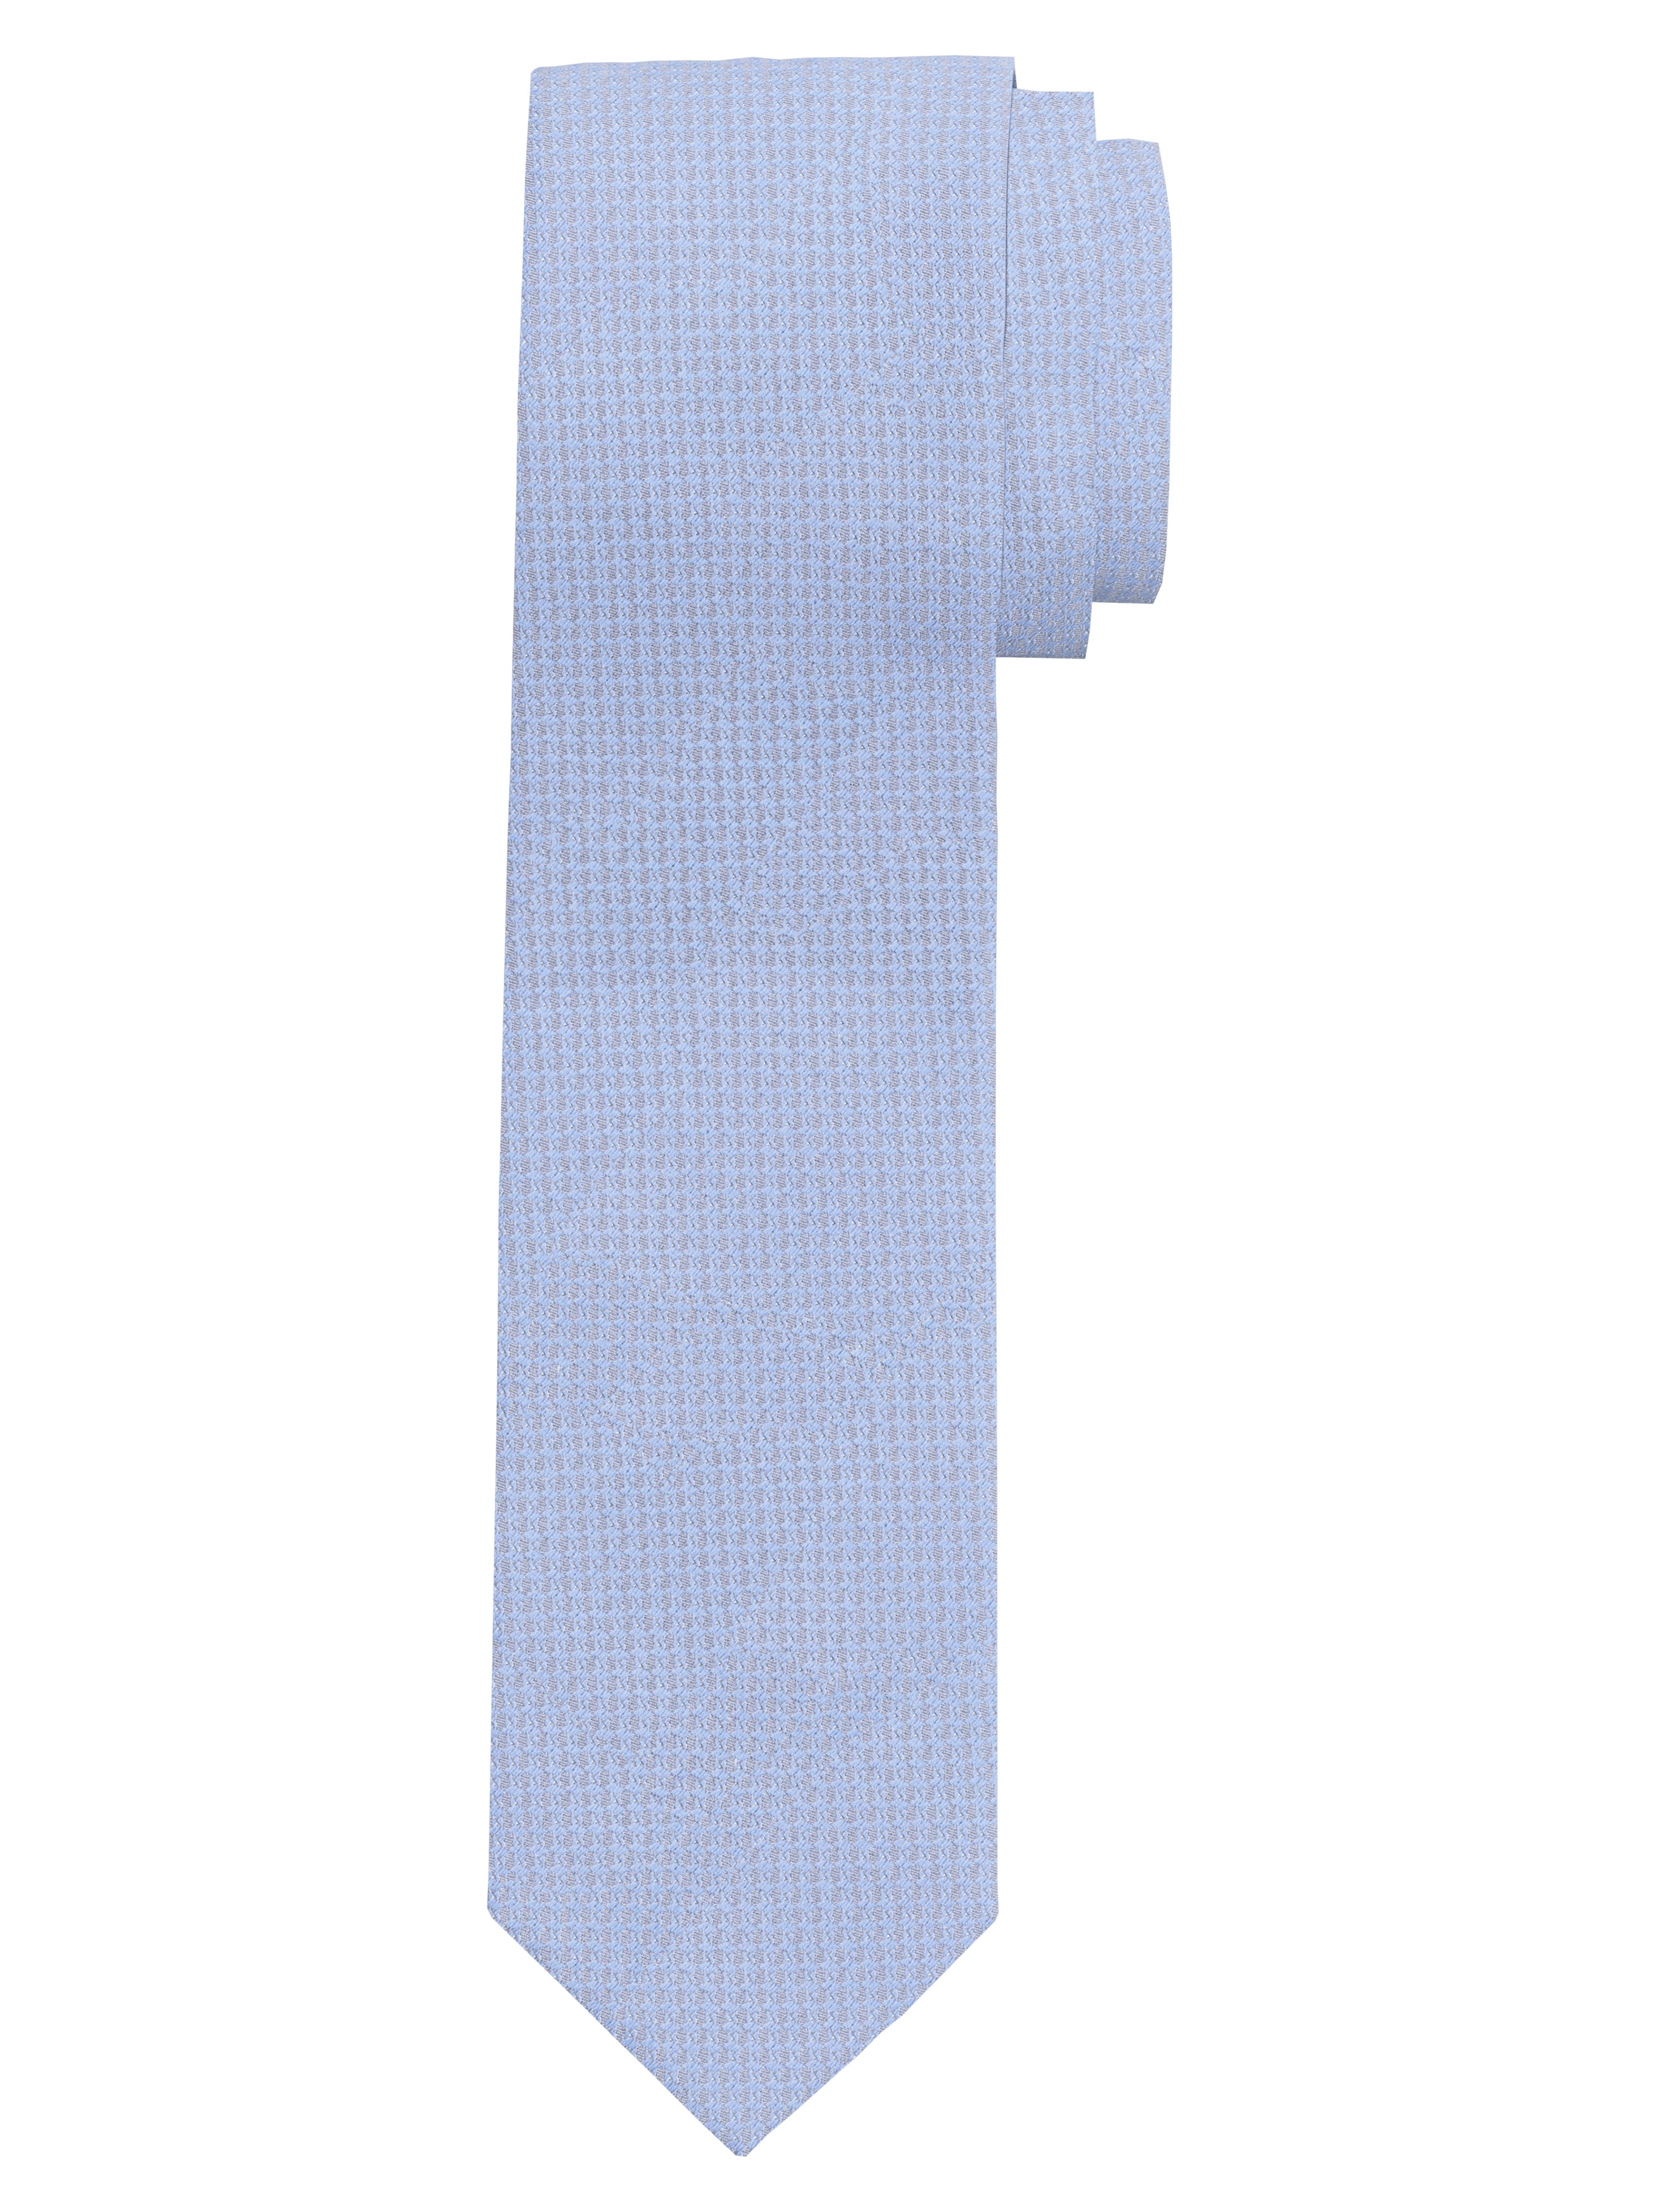 OLYMP Krawatte, slim 6,5 cm | Hellblau - 1782001001 | Breite Krawatten